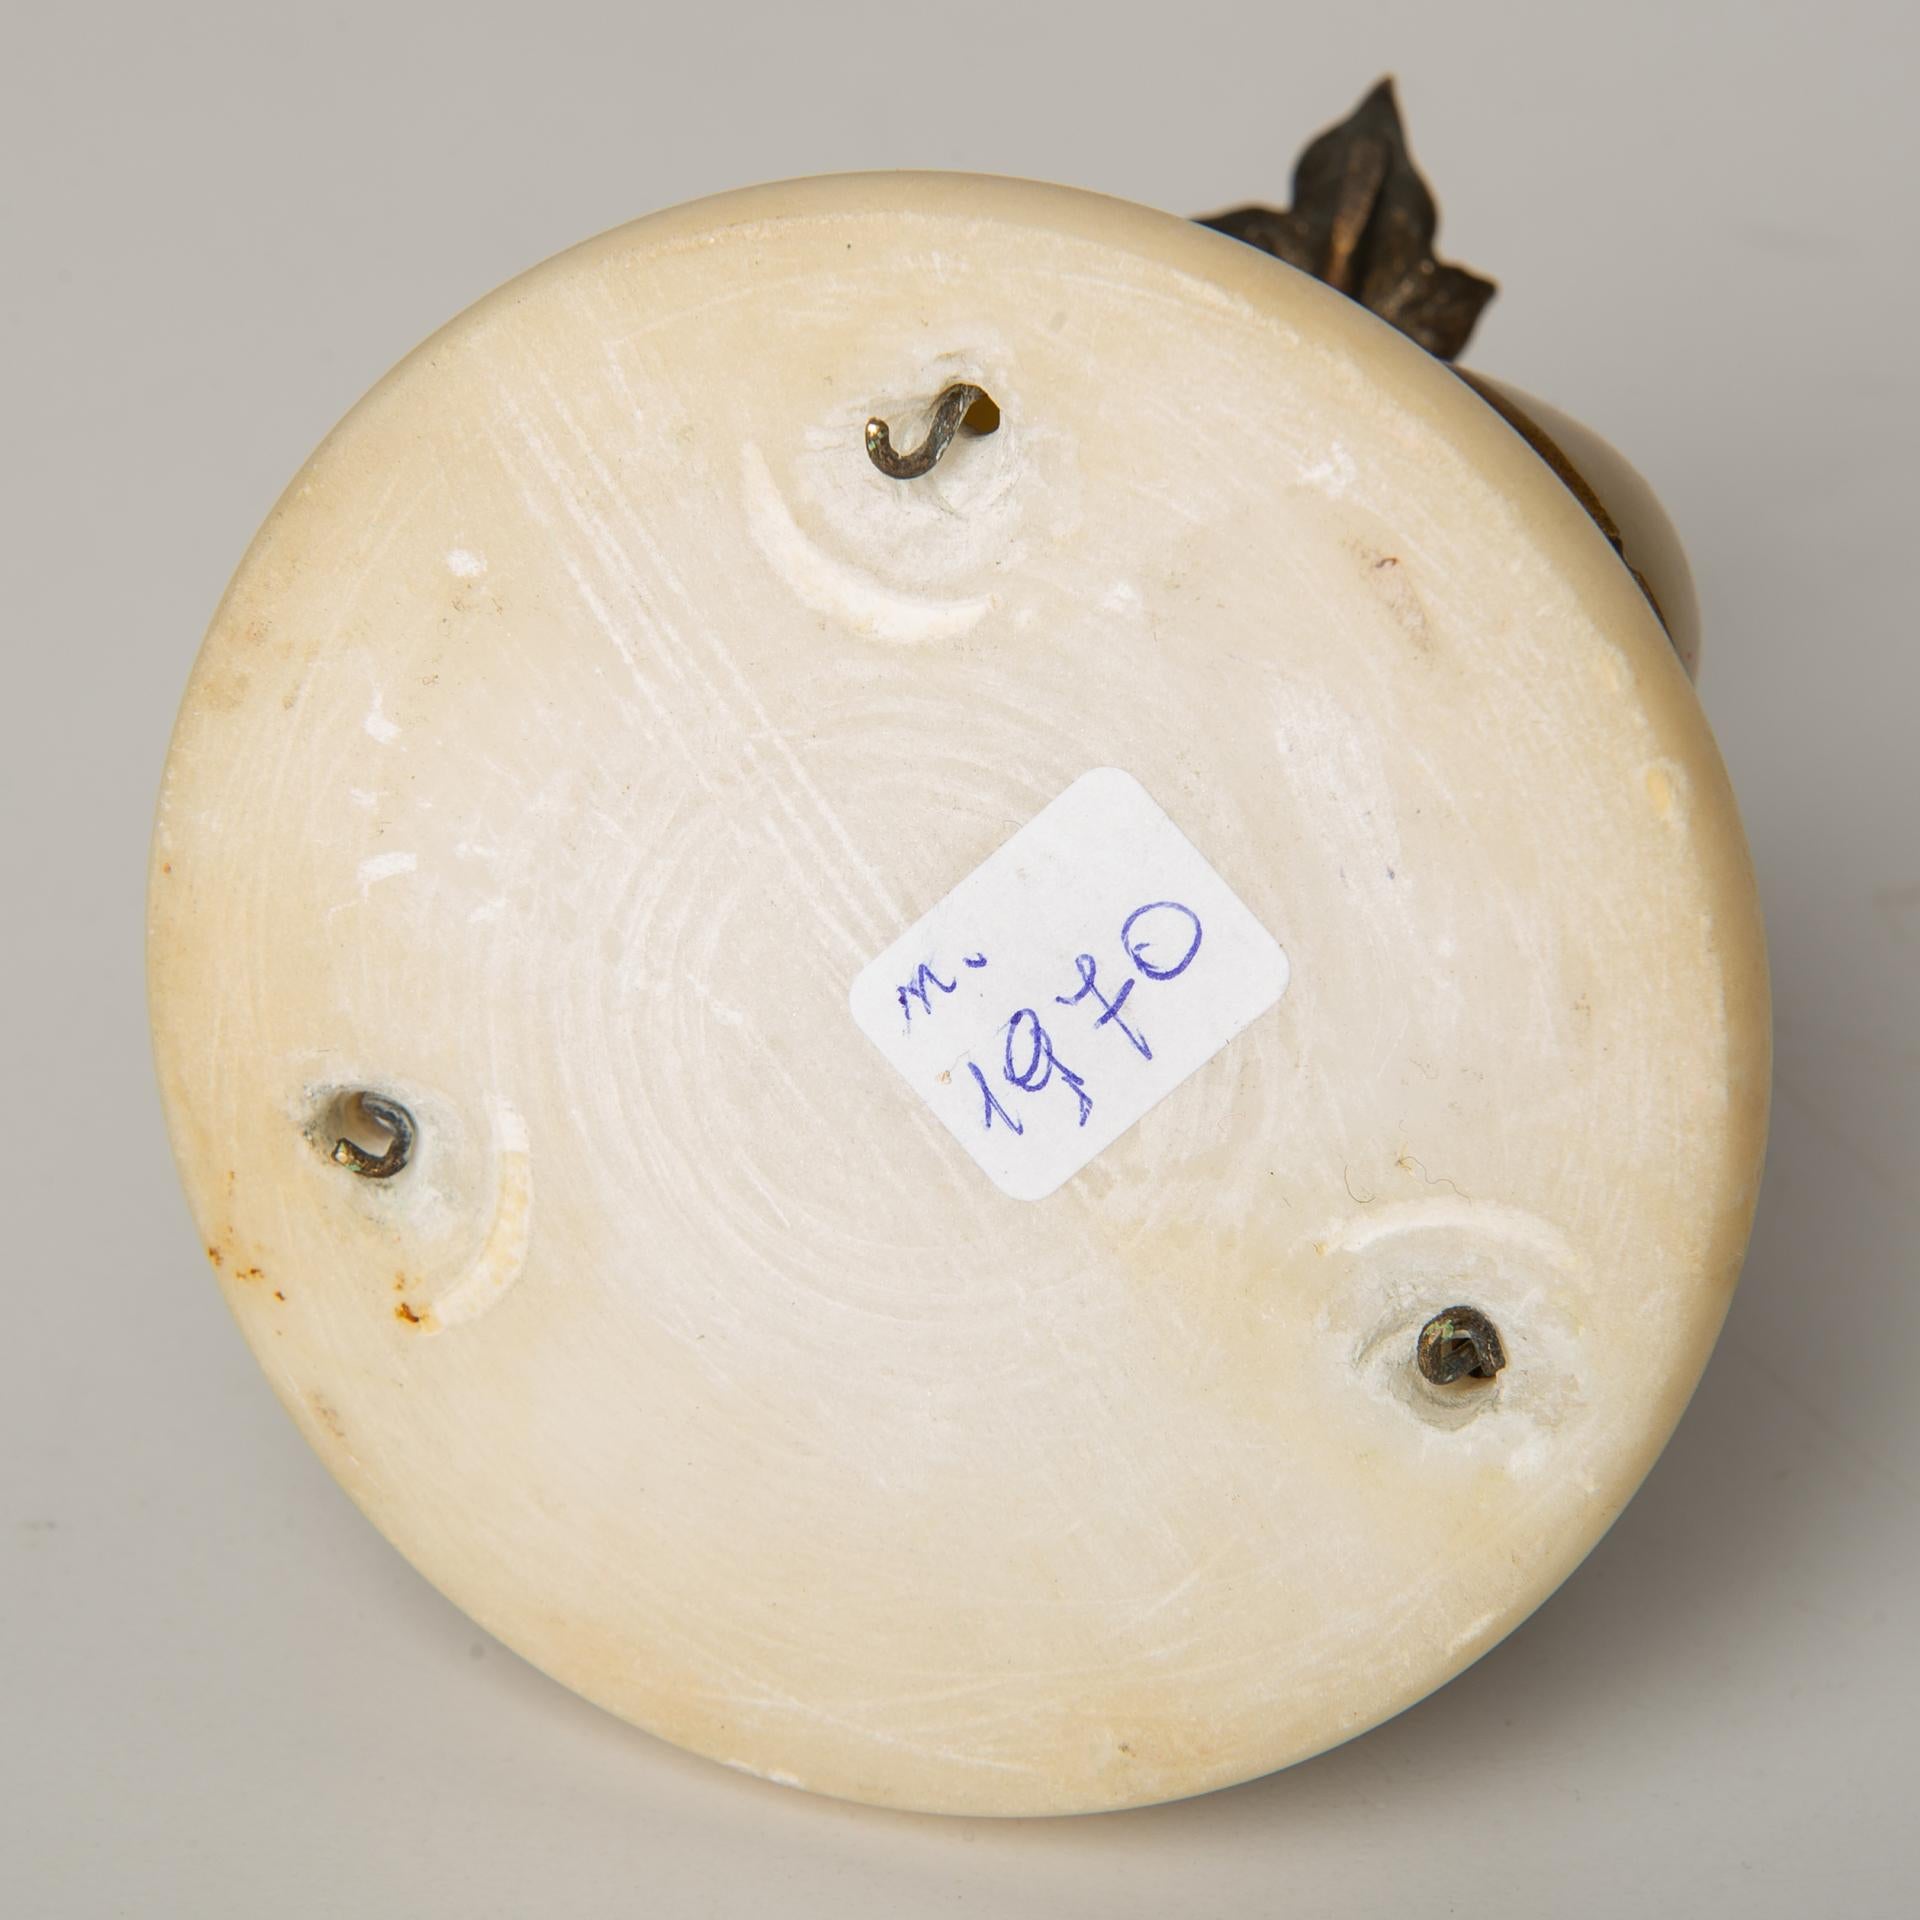 Das ist eine antike Essensglocke mit einer Glocke aus Abalone und Perlmutt auf einem weißen Marmorsockel. Ich habe dieses Objekt während eines Urlaubs in Frankreich gefunden, und die Aufschrift auf Französisch bestätigt es: 